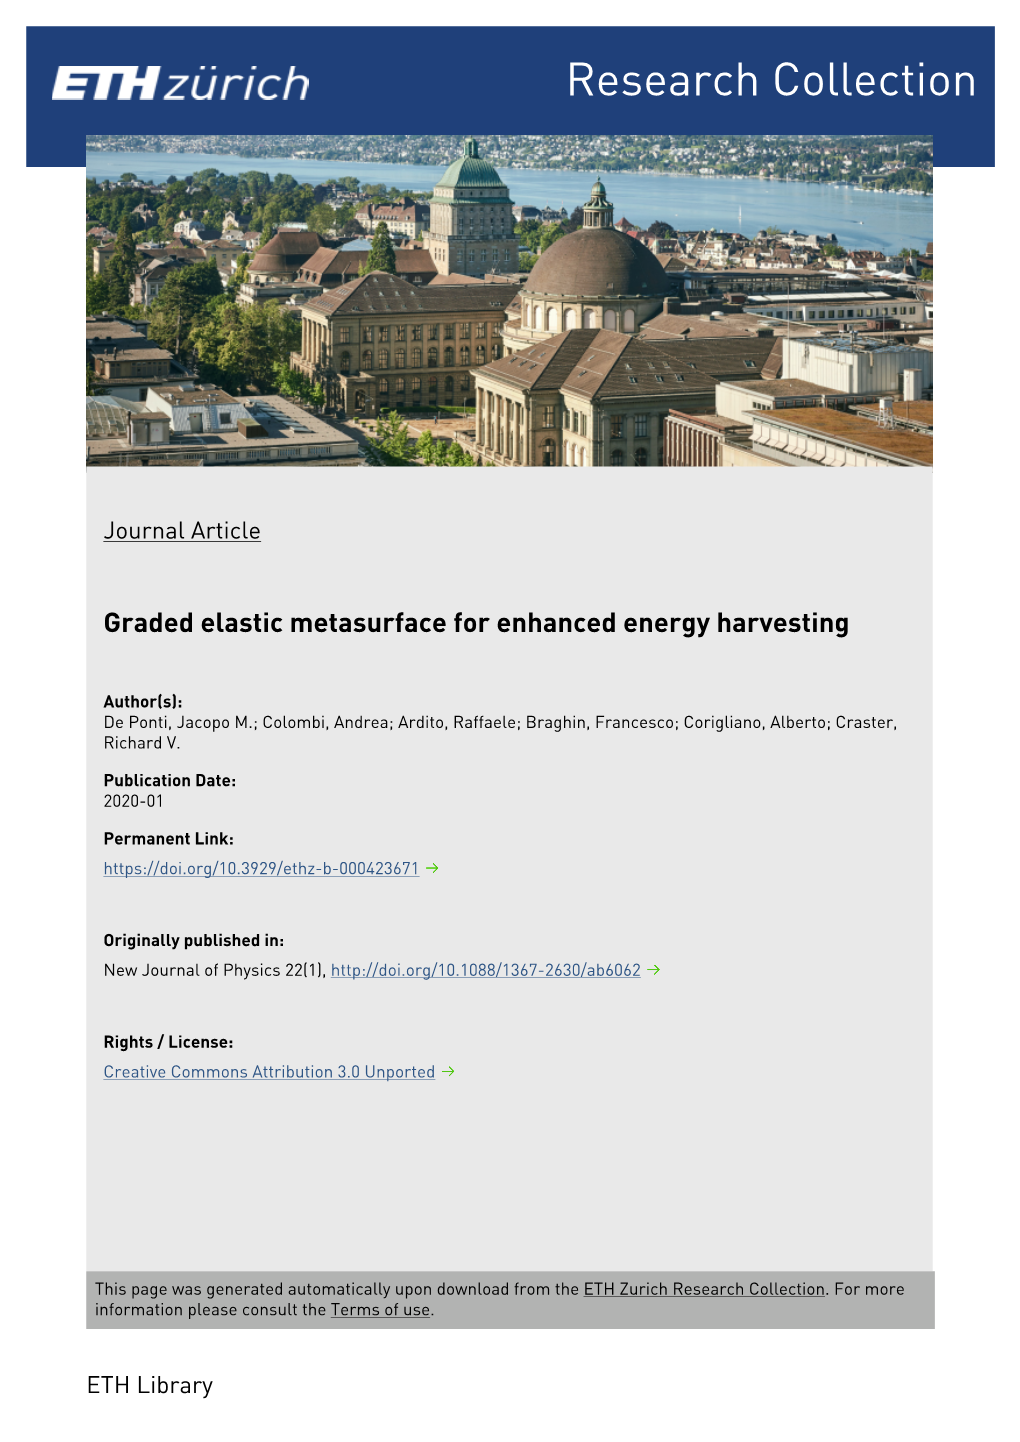 Graded Elastic Metasurface for Enhanced Energy Harvesting